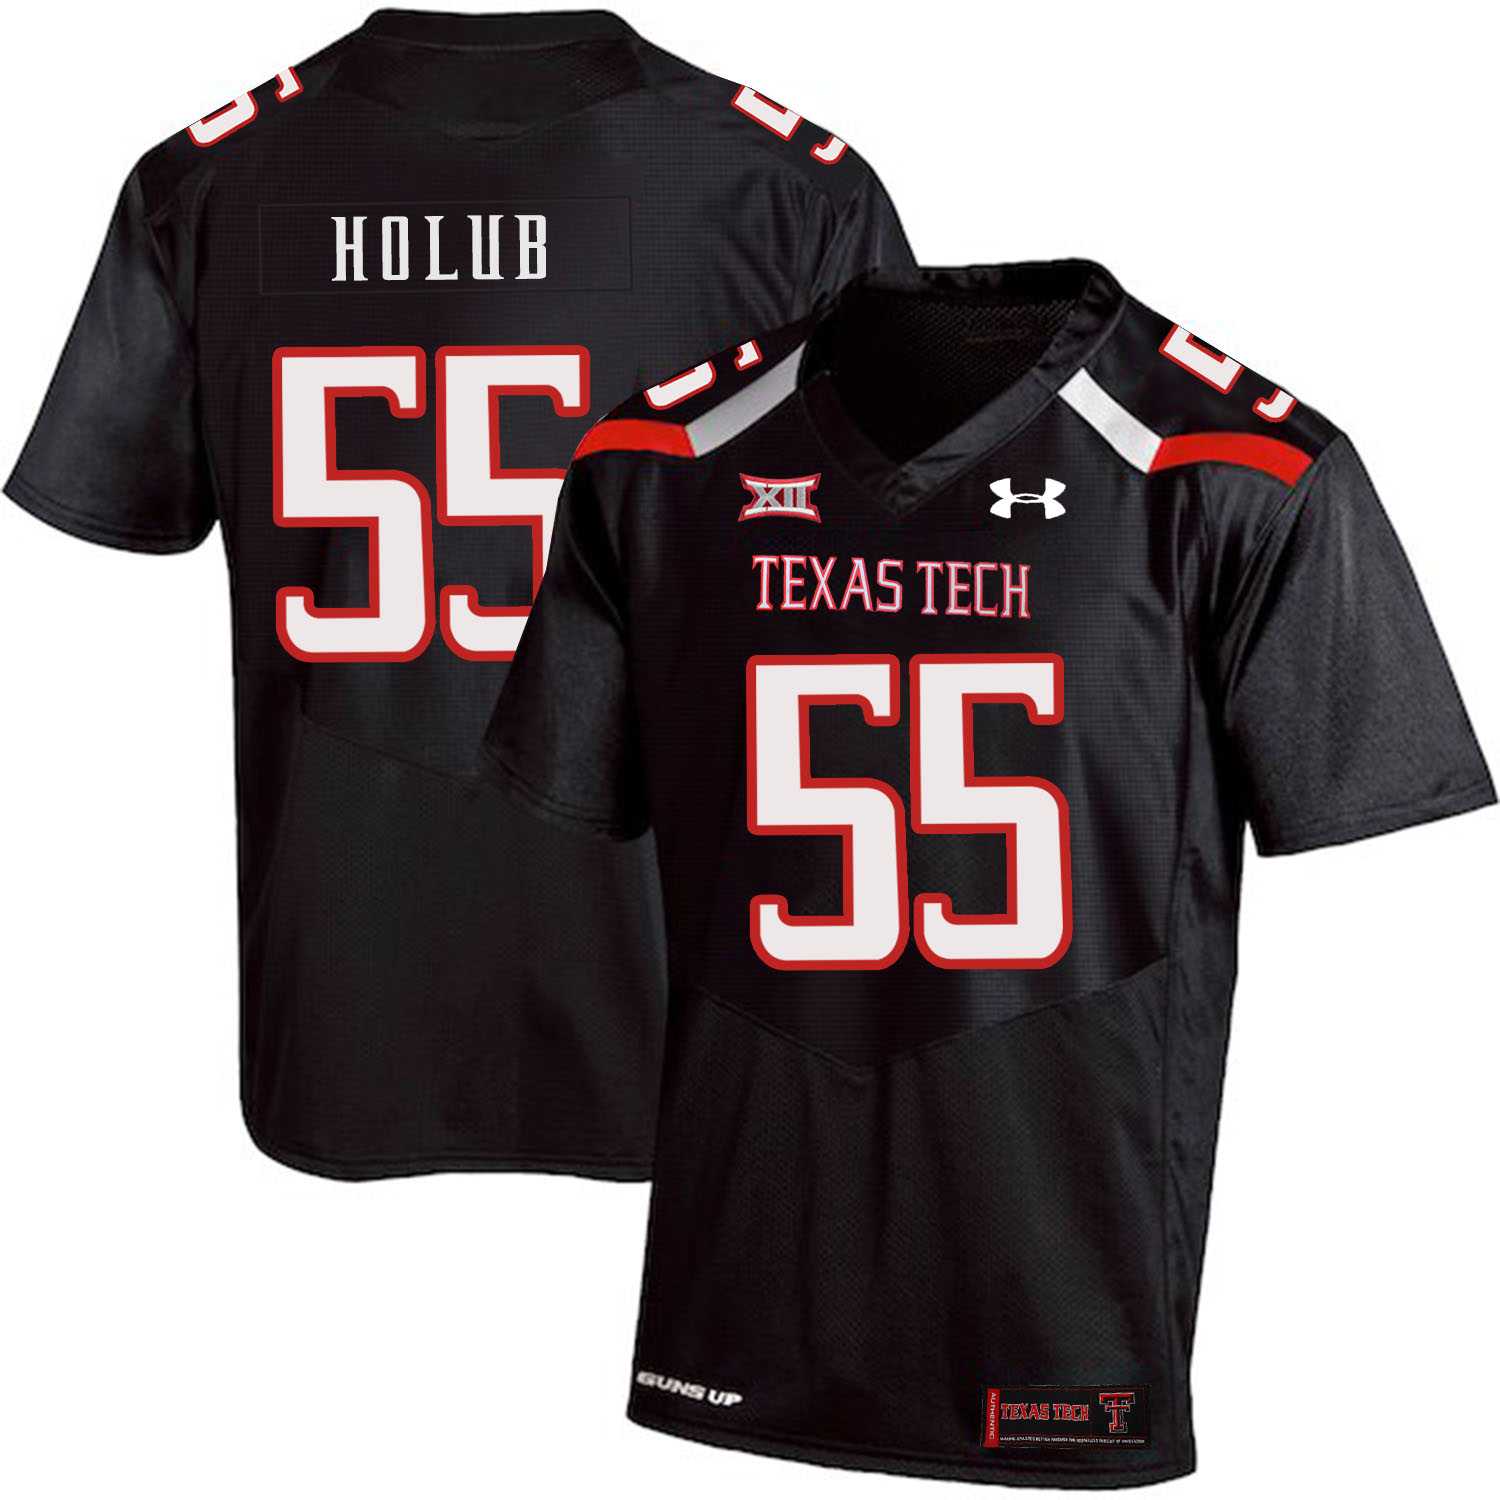 Texas Tech Red Raiders 55 E.J. Holub Black College Football Jersey Dzhi